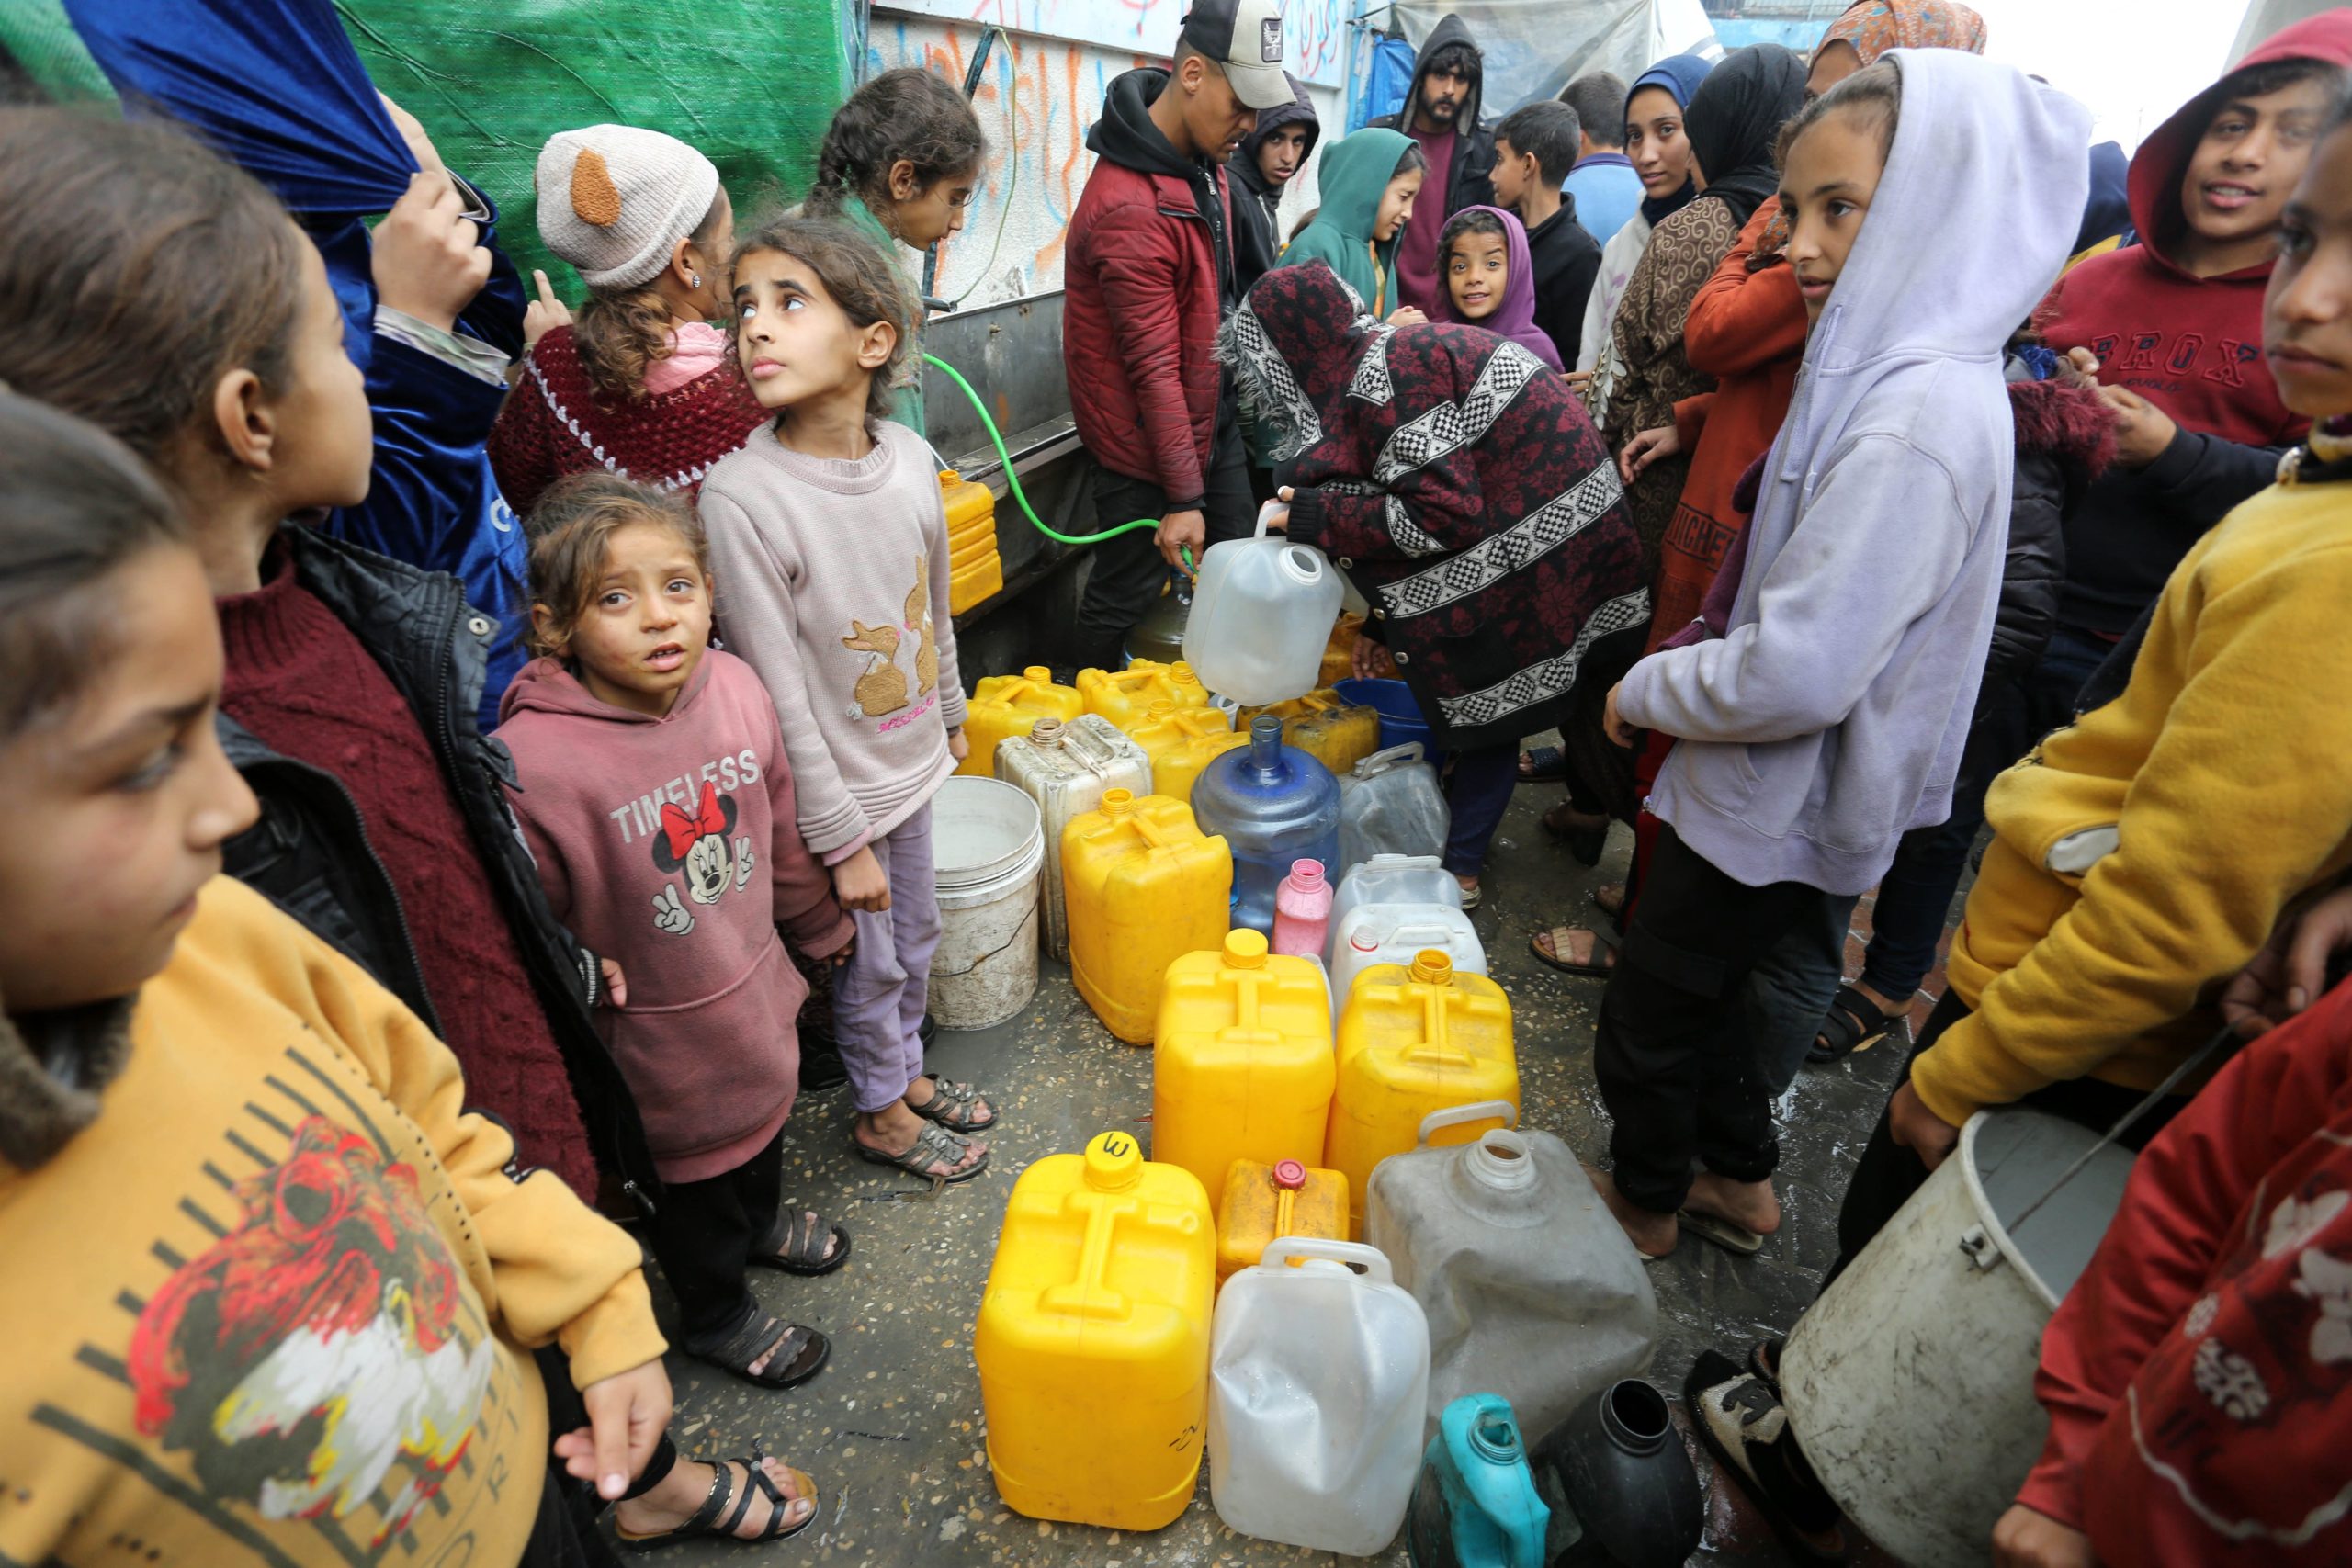 هكذا يستخدم الاحتلال سلاح المياه لمفاقمة معاناة النازحين في غزة